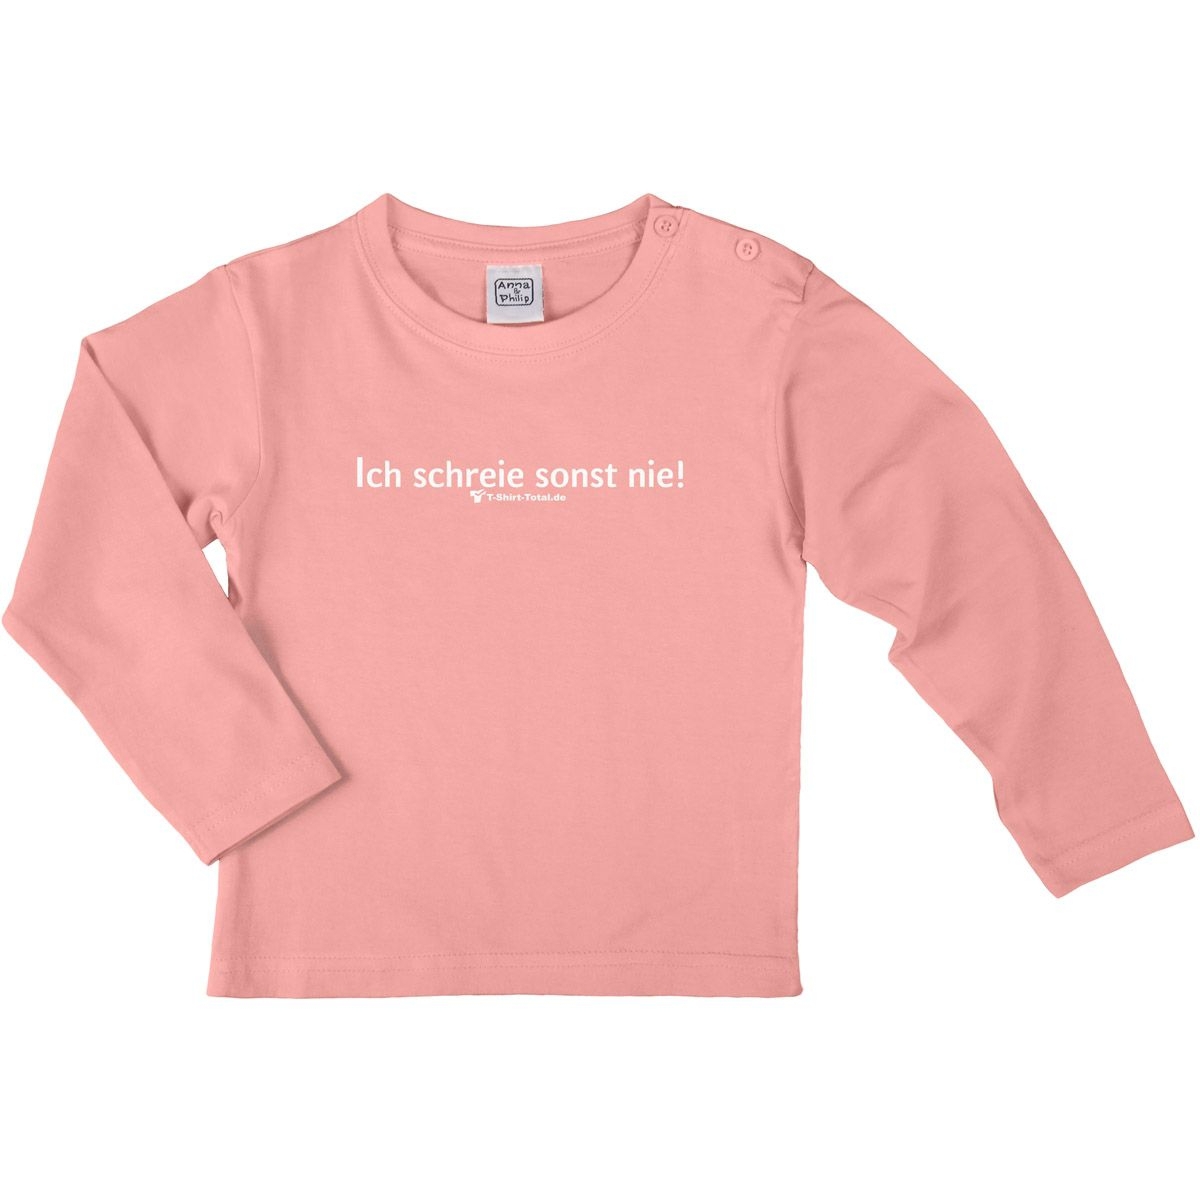 Ich schrei sonst nie Kinder Langarm Shirt rosa 122 / 128